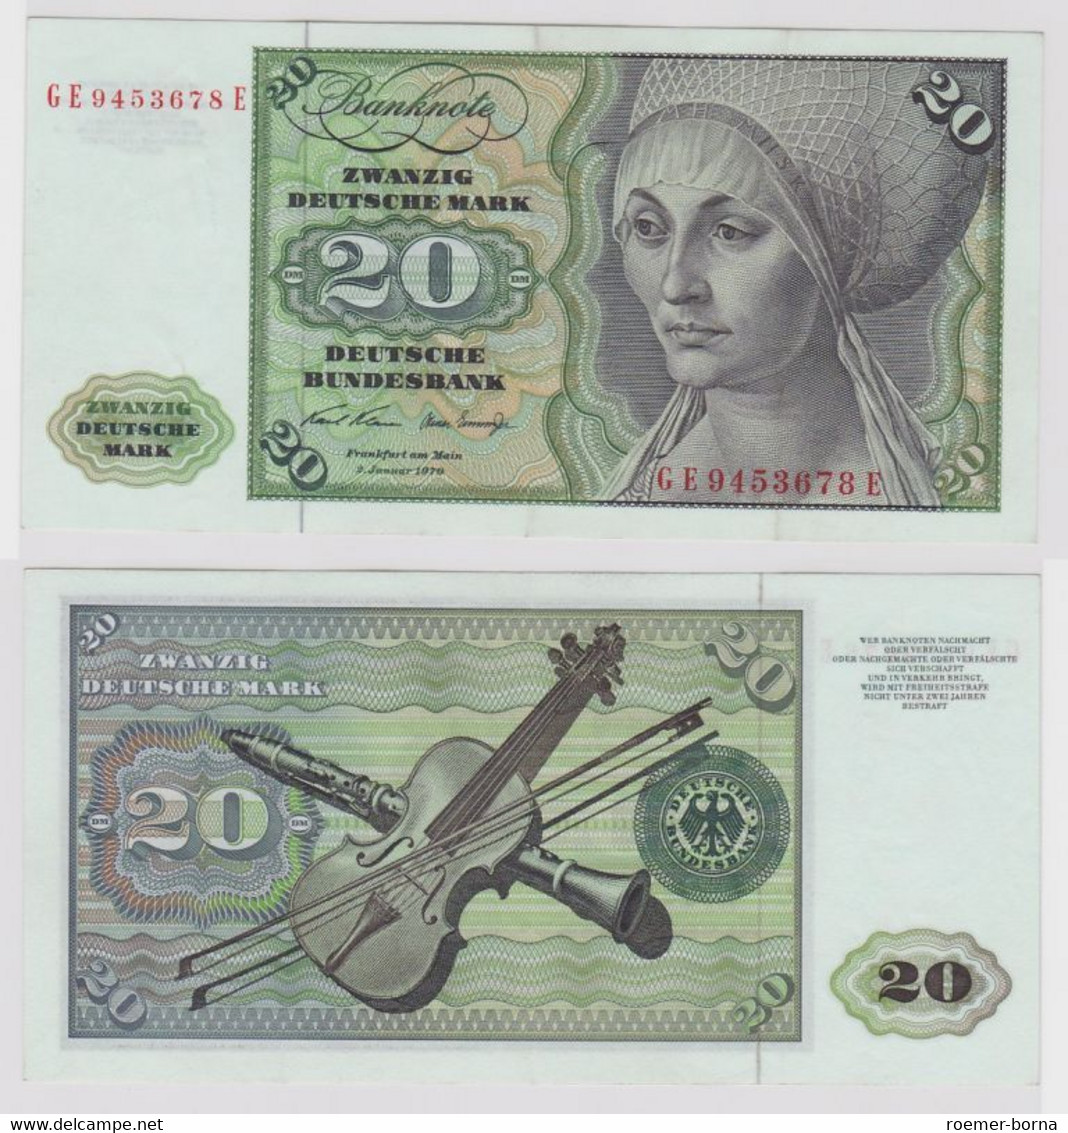 T148661 Banknote 20 DM Deutsche Mark Ro. 271b Schein 2.Jan. 1970 KN GE 9453678 E - 20 Deutsche Mark